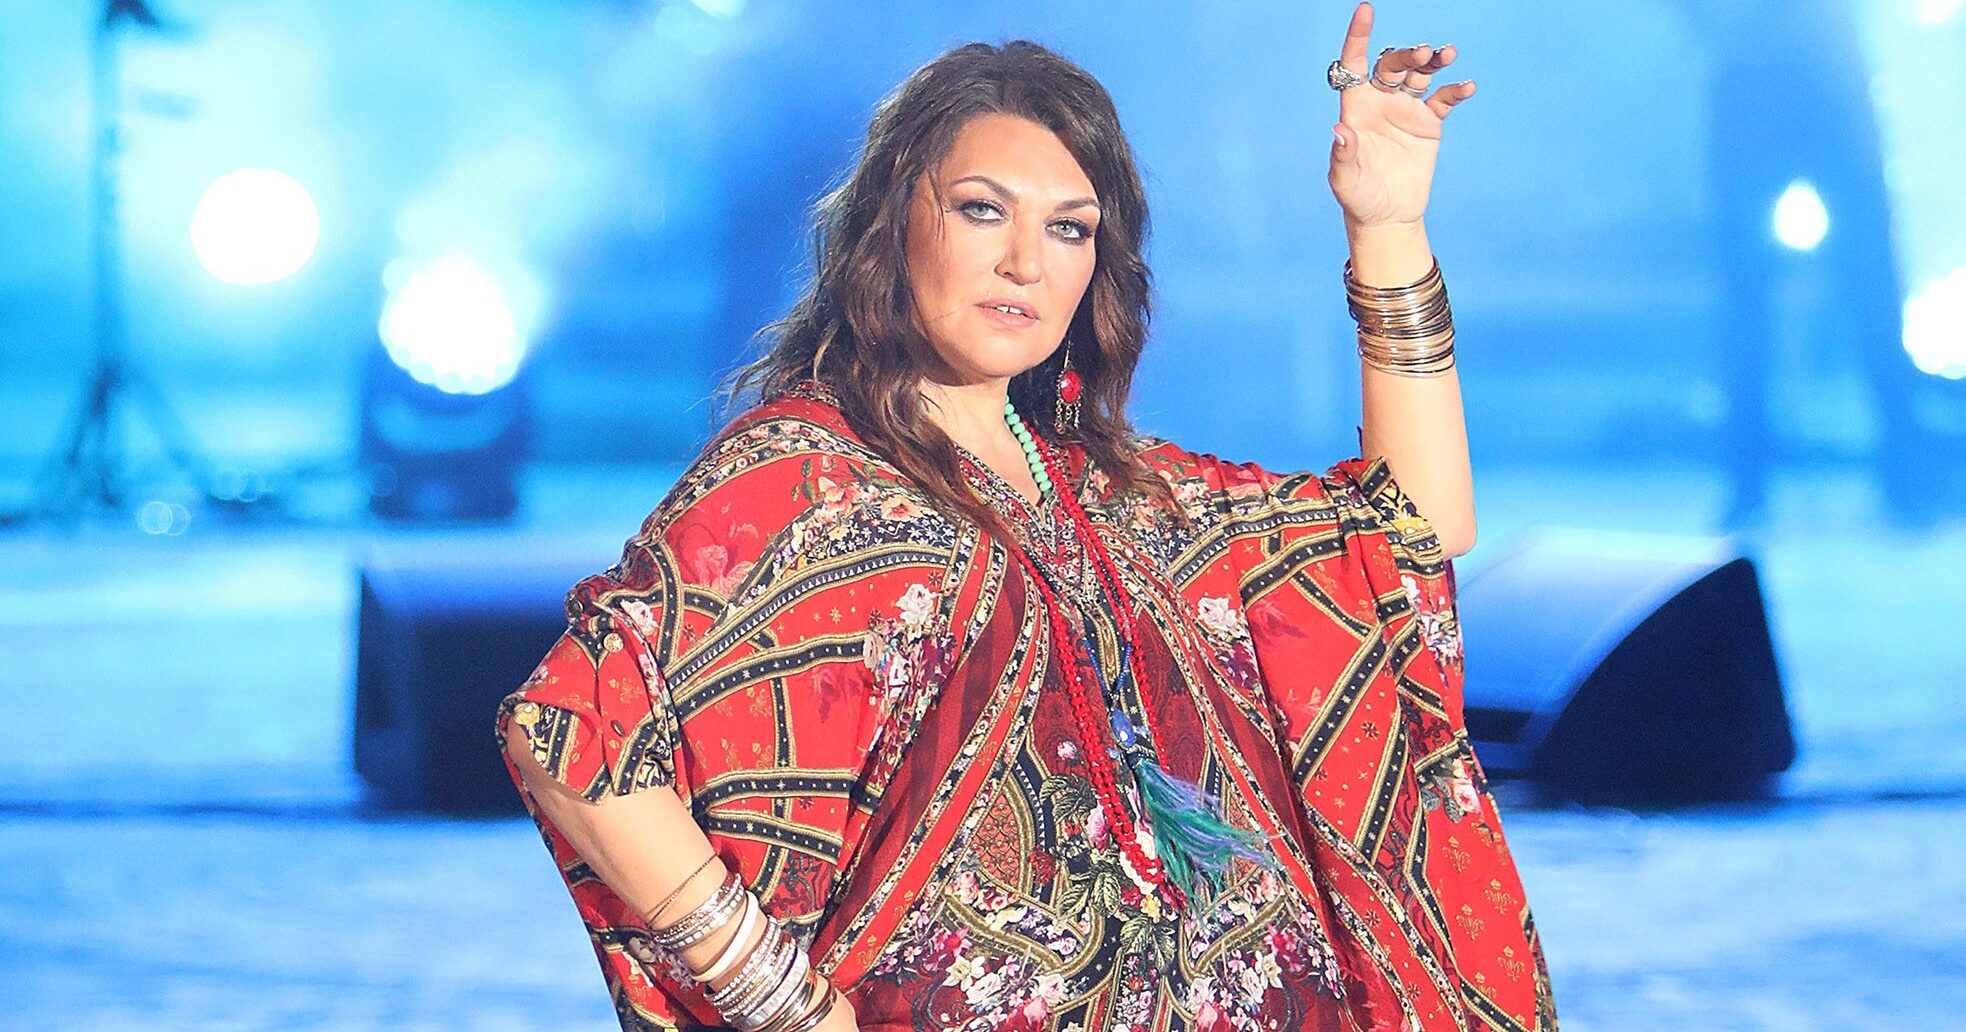 Καίτη Γαρμπή: Παραλήρημα στο Twitter με το φόρεμα που επέλεξε στο 5ο live του J2US και θύμισε την εμφάνισή της στην Eurovision